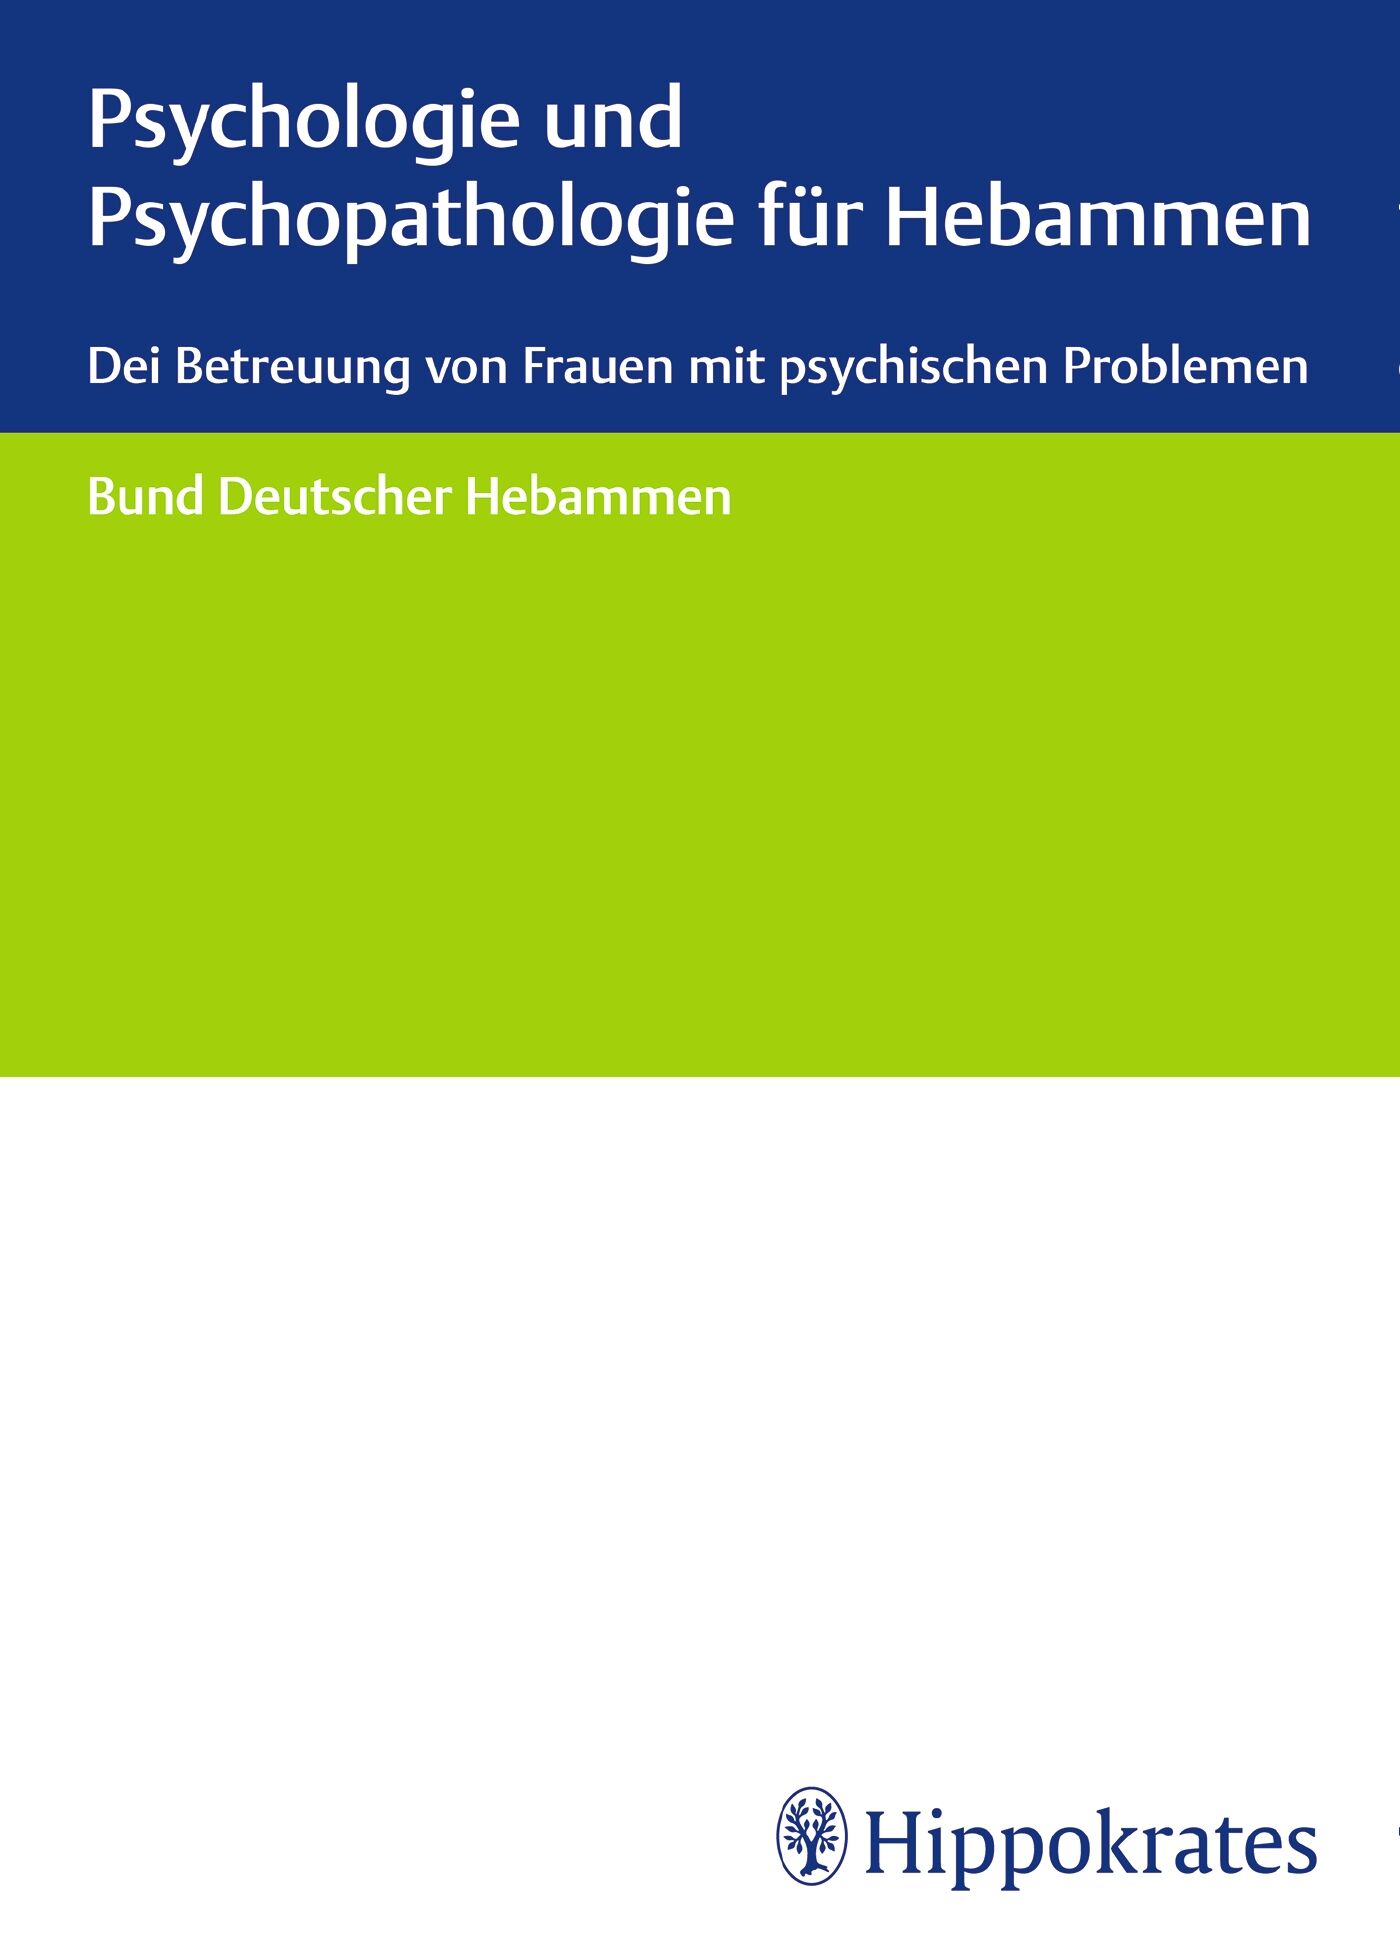 Psychologie und Psychopathologie für Hebammen, 9783132435124